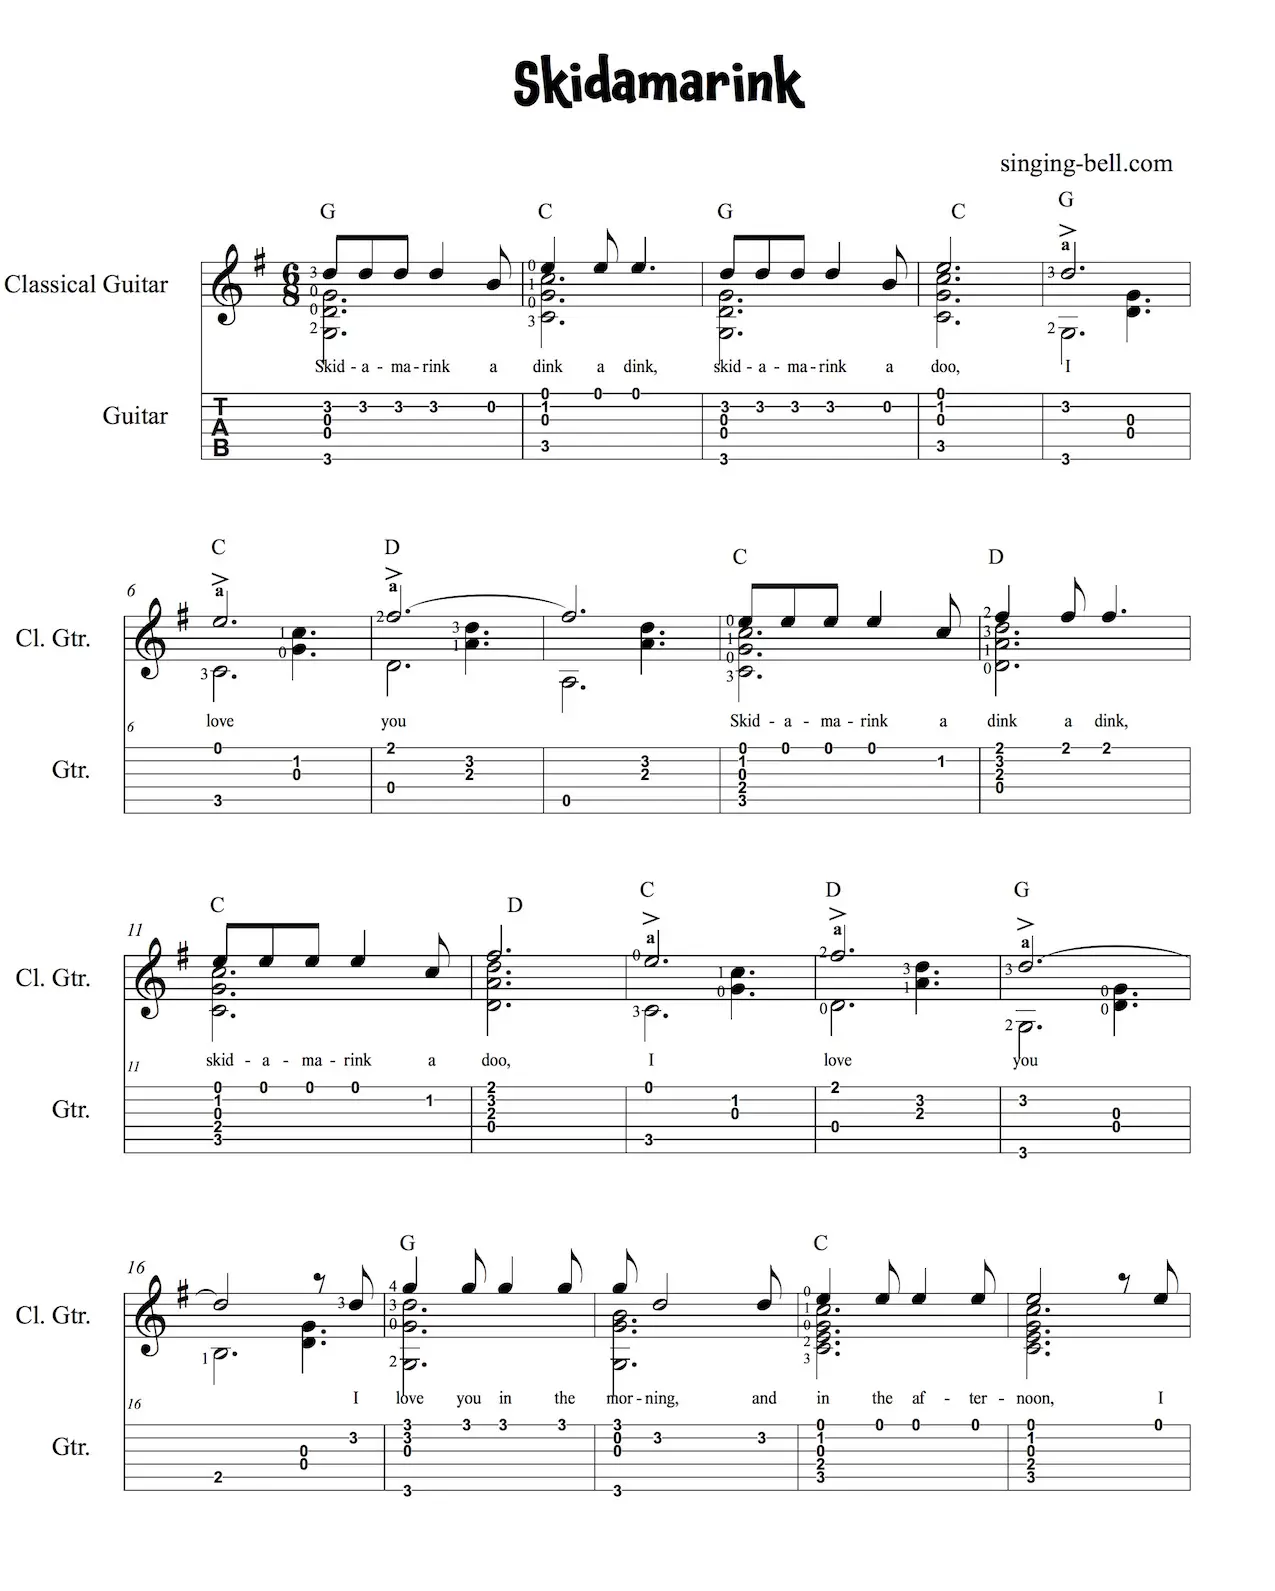 Skidamarink Guitar Chords, Sheet Music PDF